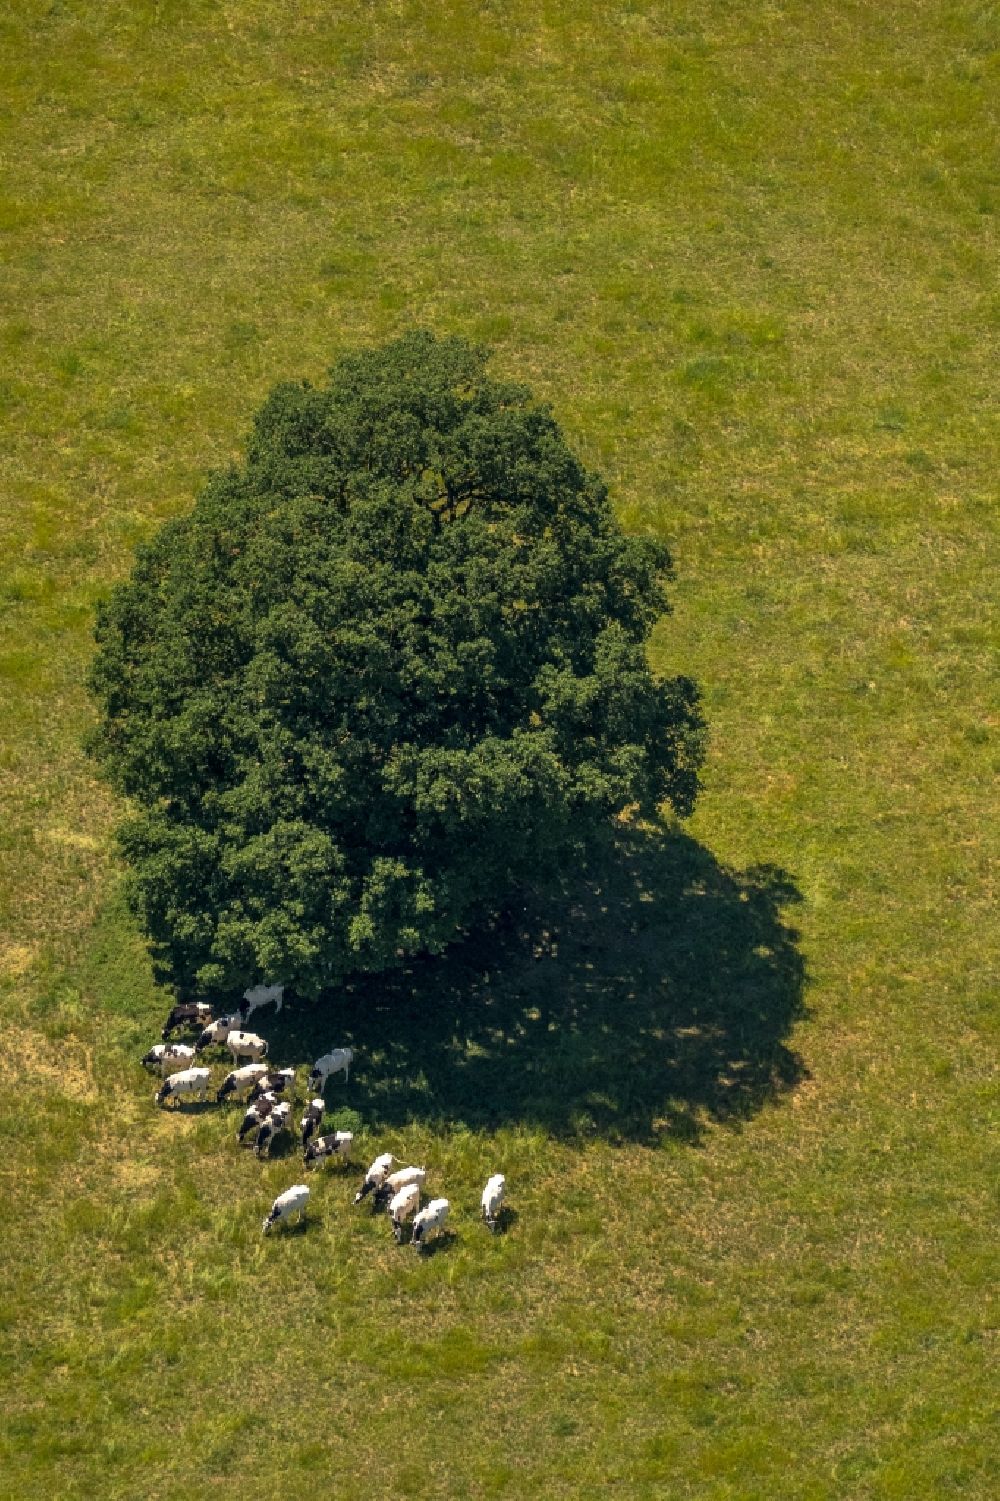 Liesborn aus der Vogelperspektive: Baum mit Schattenbildung durch Lichteinstrahlung auf einem Feld in Liesborn im Bundesland Nordrhein-Westfalen, Deutschland